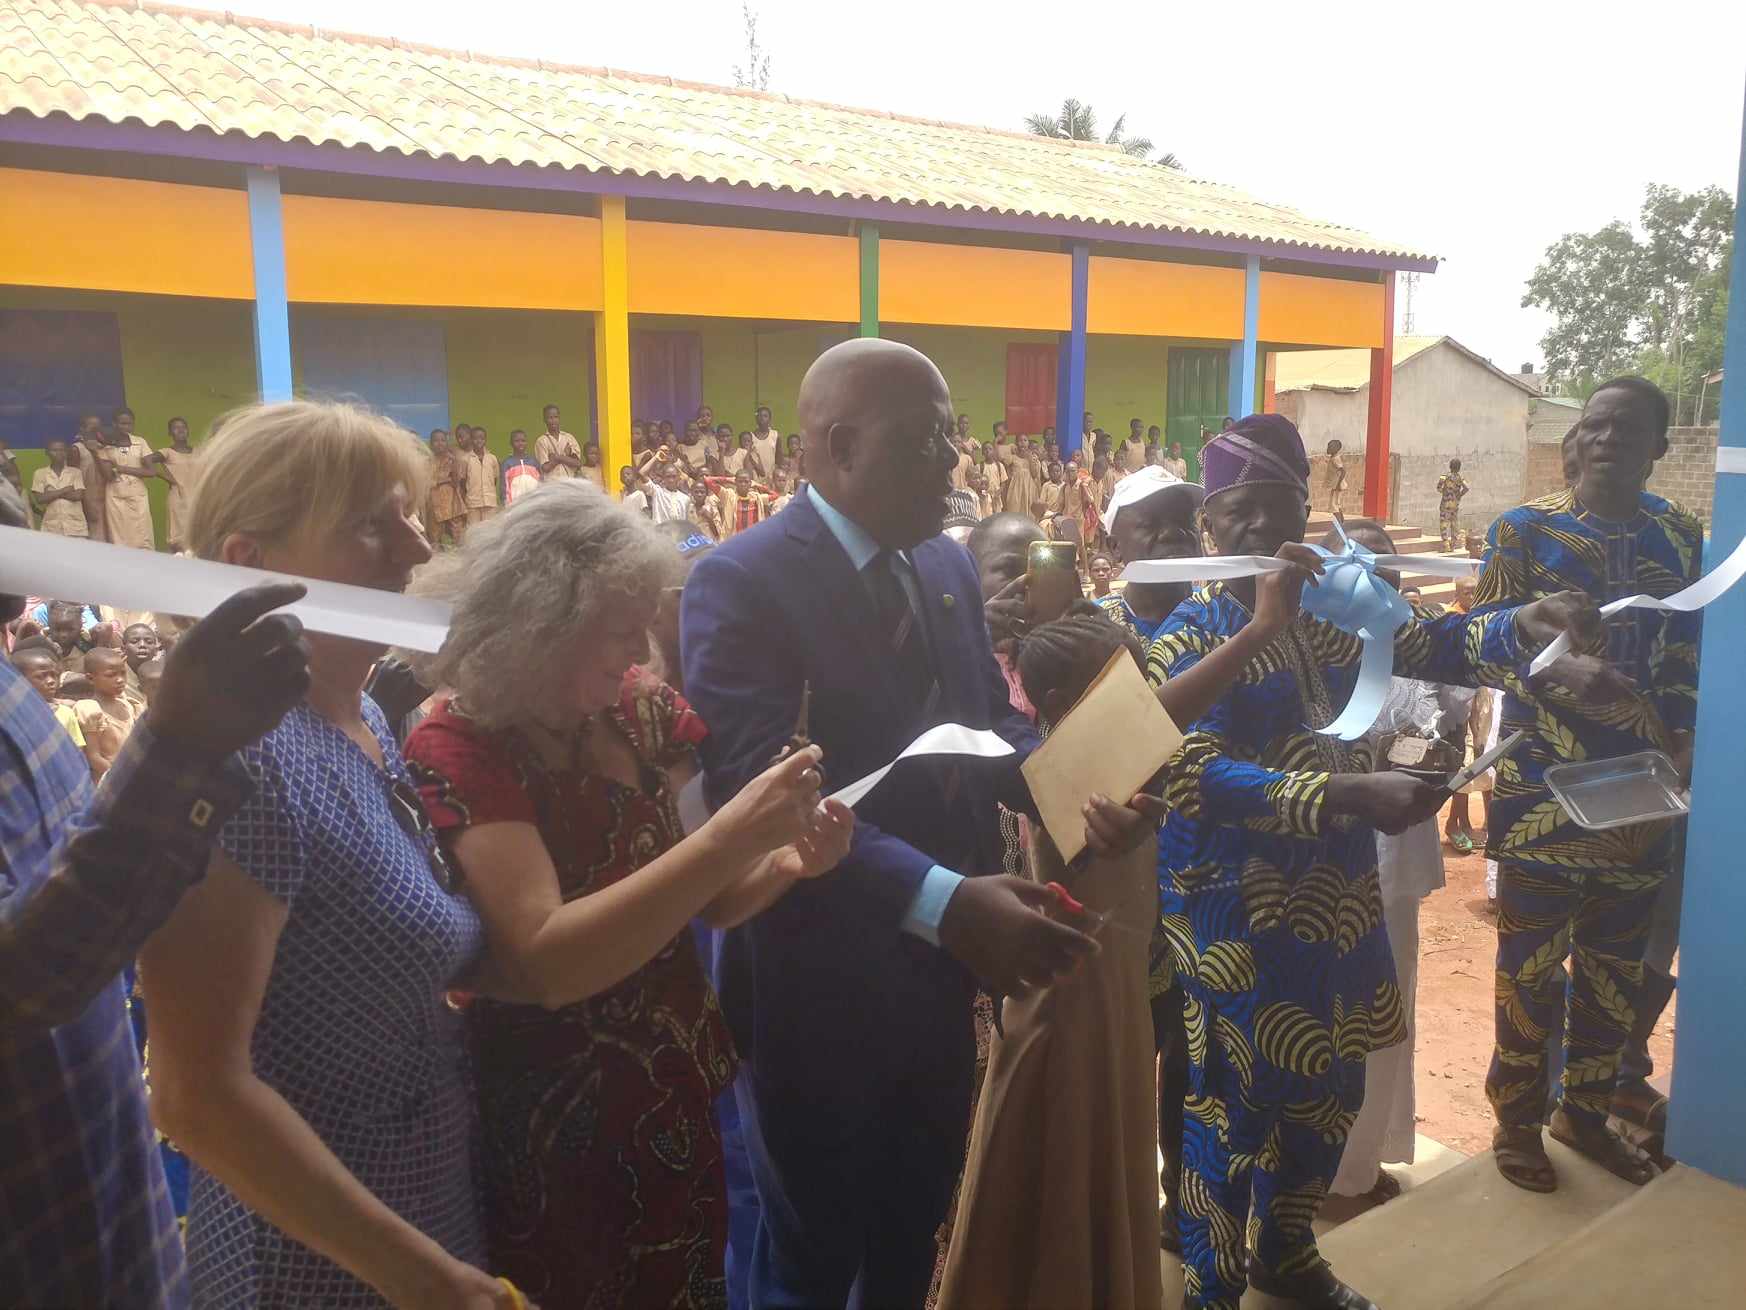 Bénin – Inauguration de salles de classe à Abomey-Calavi : l’ONG Actions de Solidarité au secours des écoliers de l’EPP Agonmey Akassato